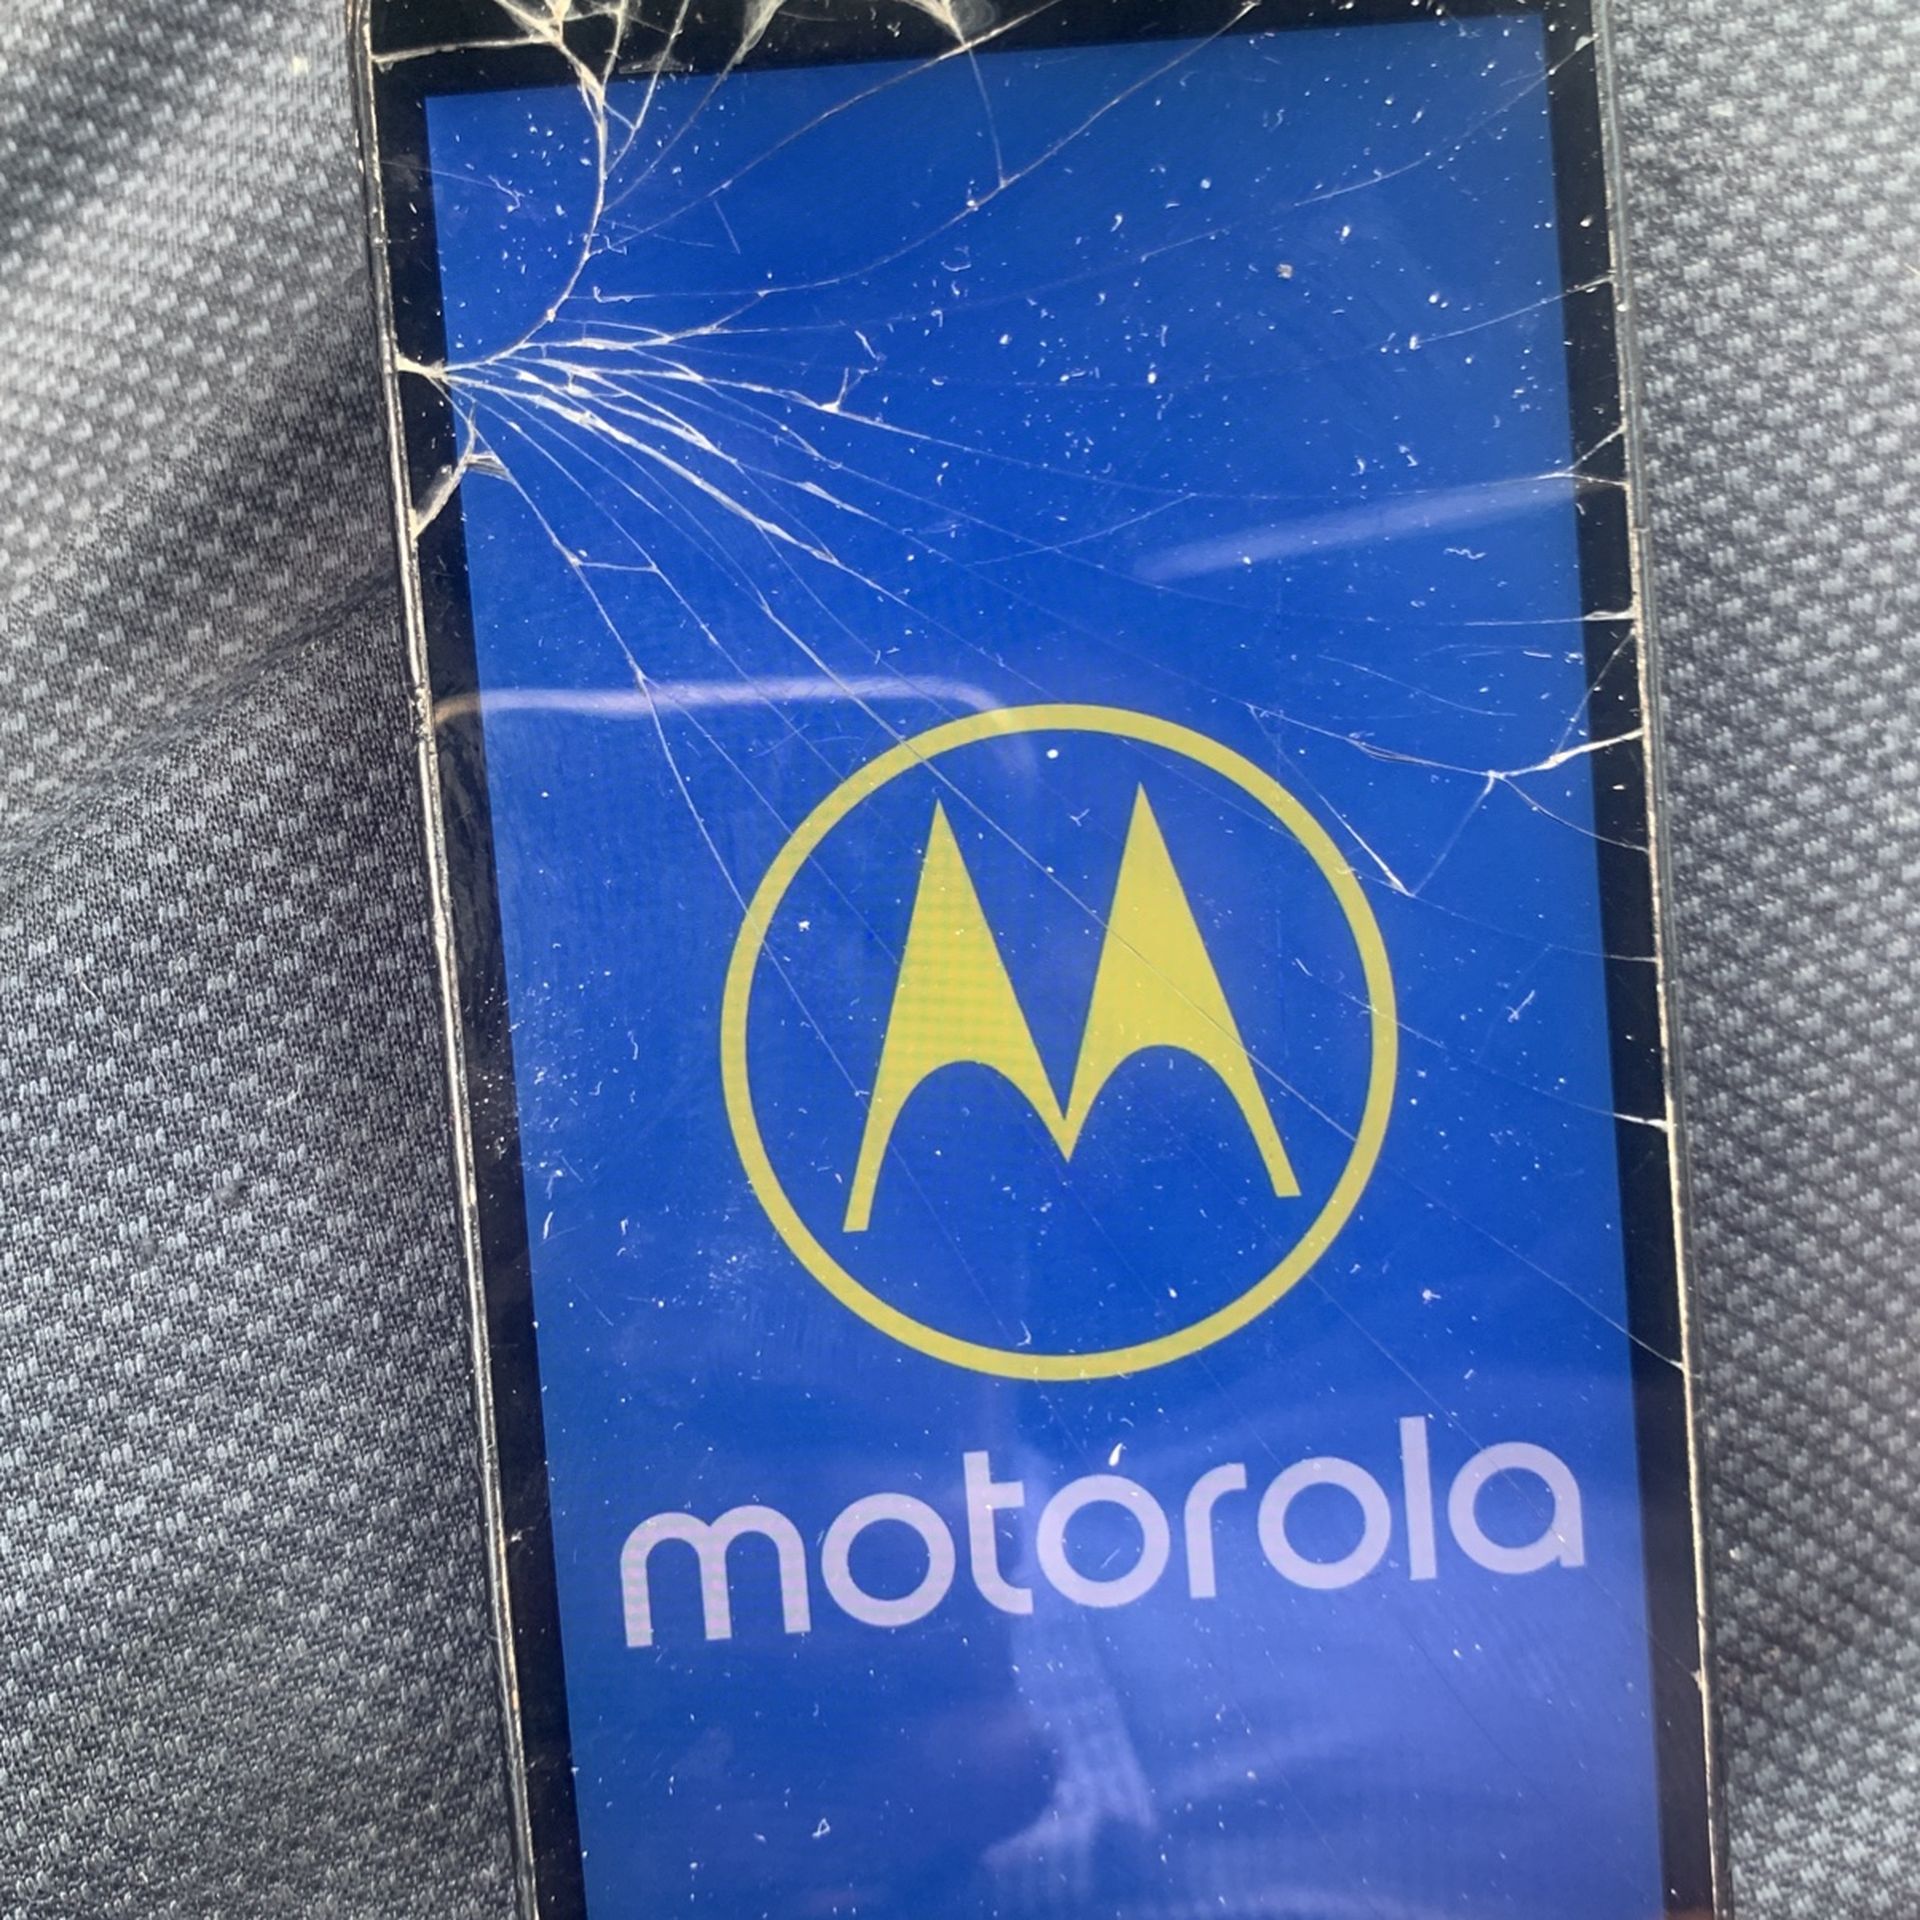 Motorola For Verizon 